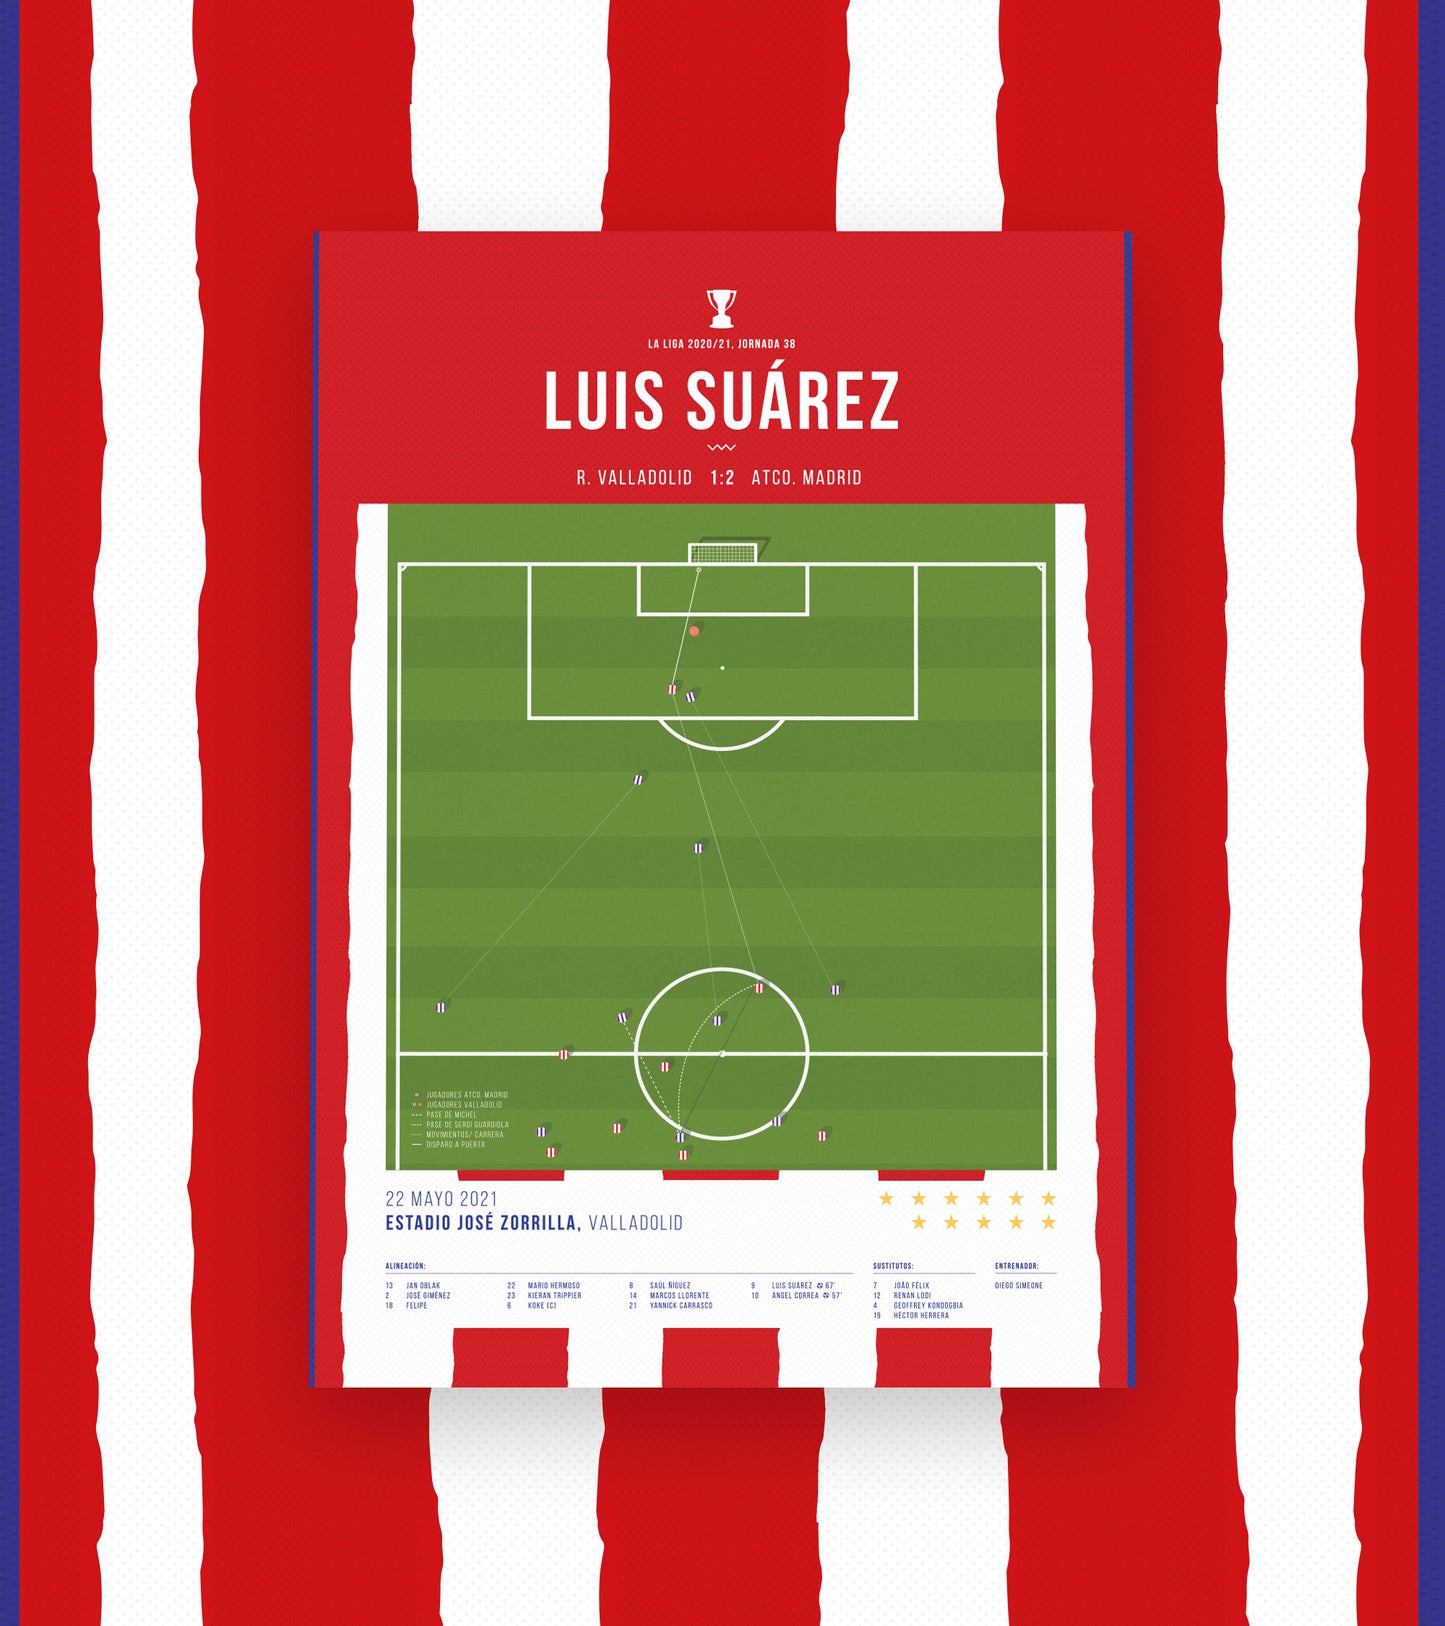 Luis Suárez marque un but qui vaut un titre de Liga